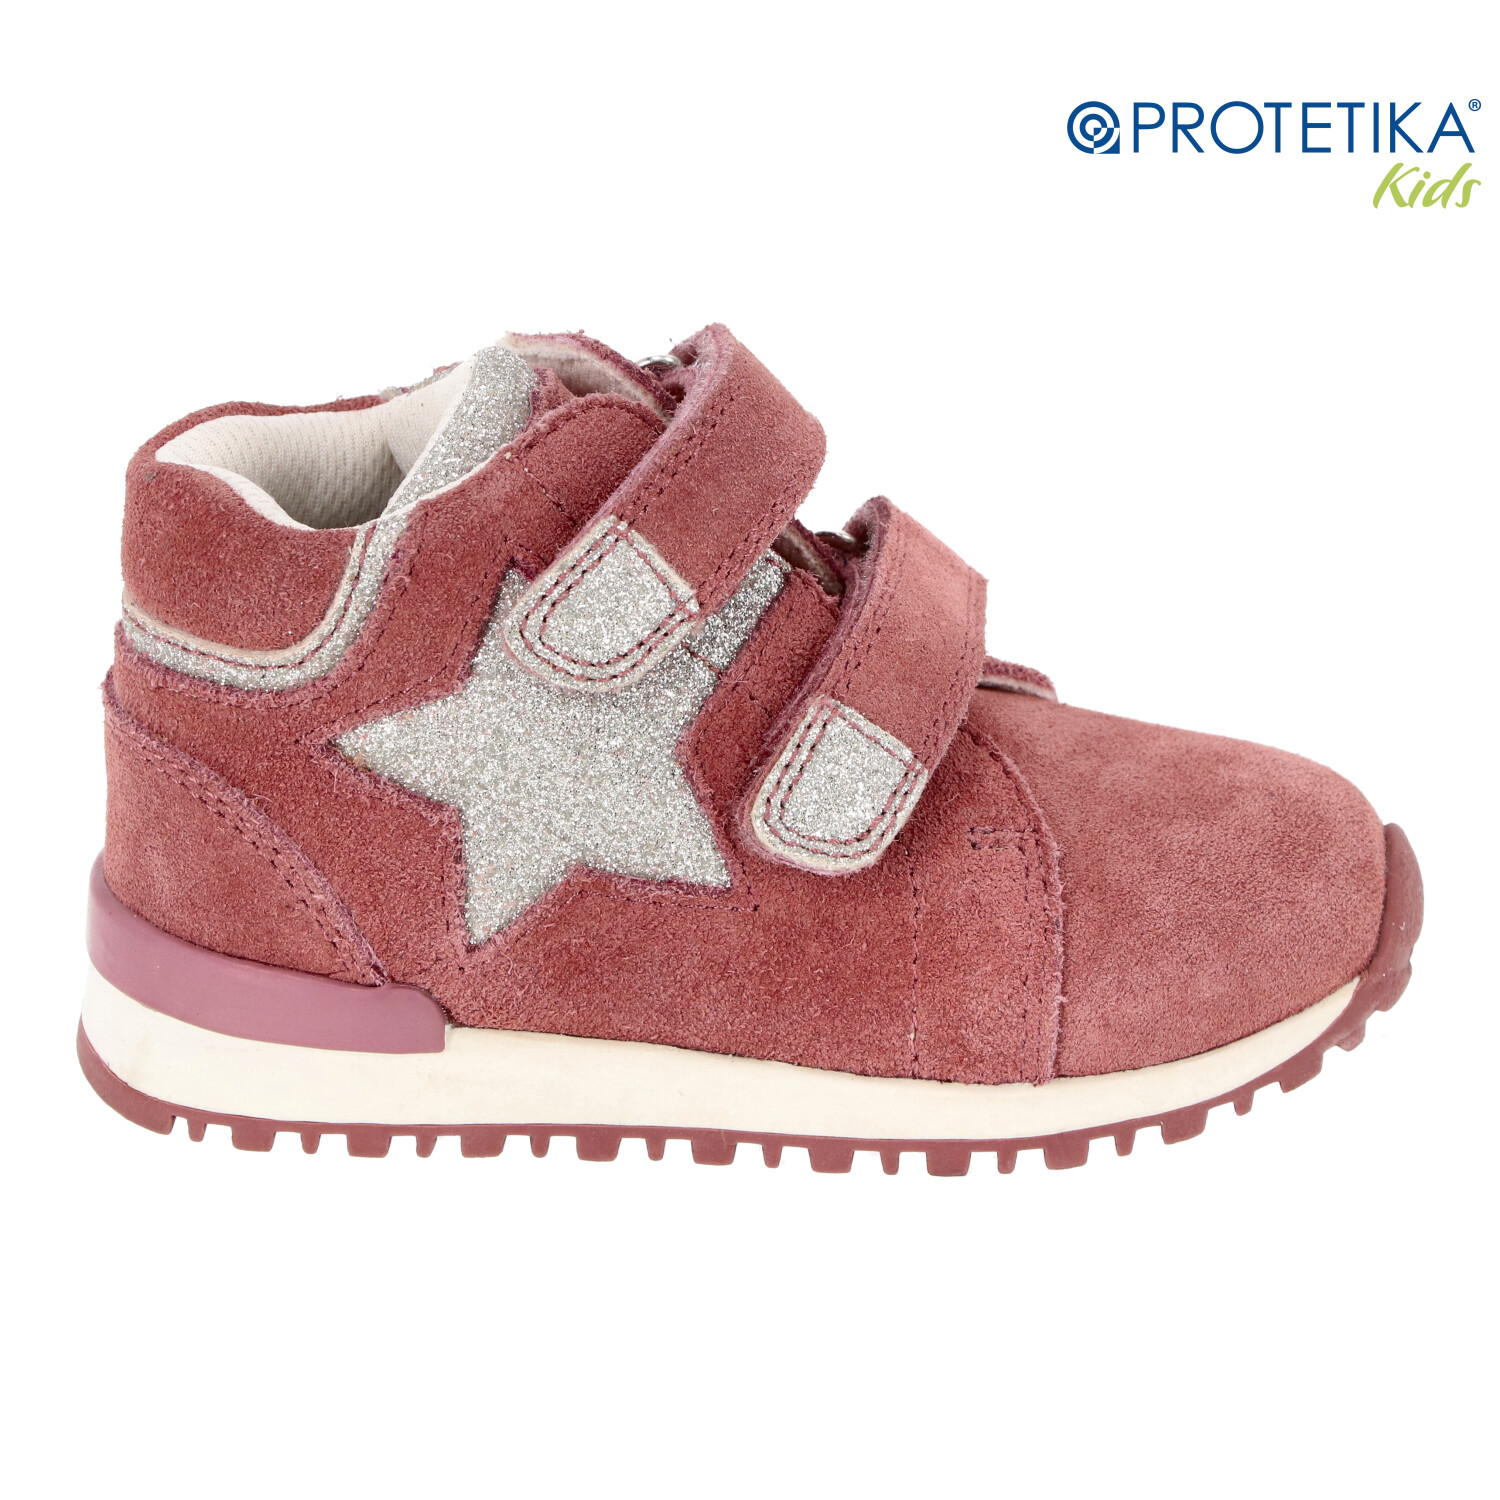 Protetika - topánky VALA pink